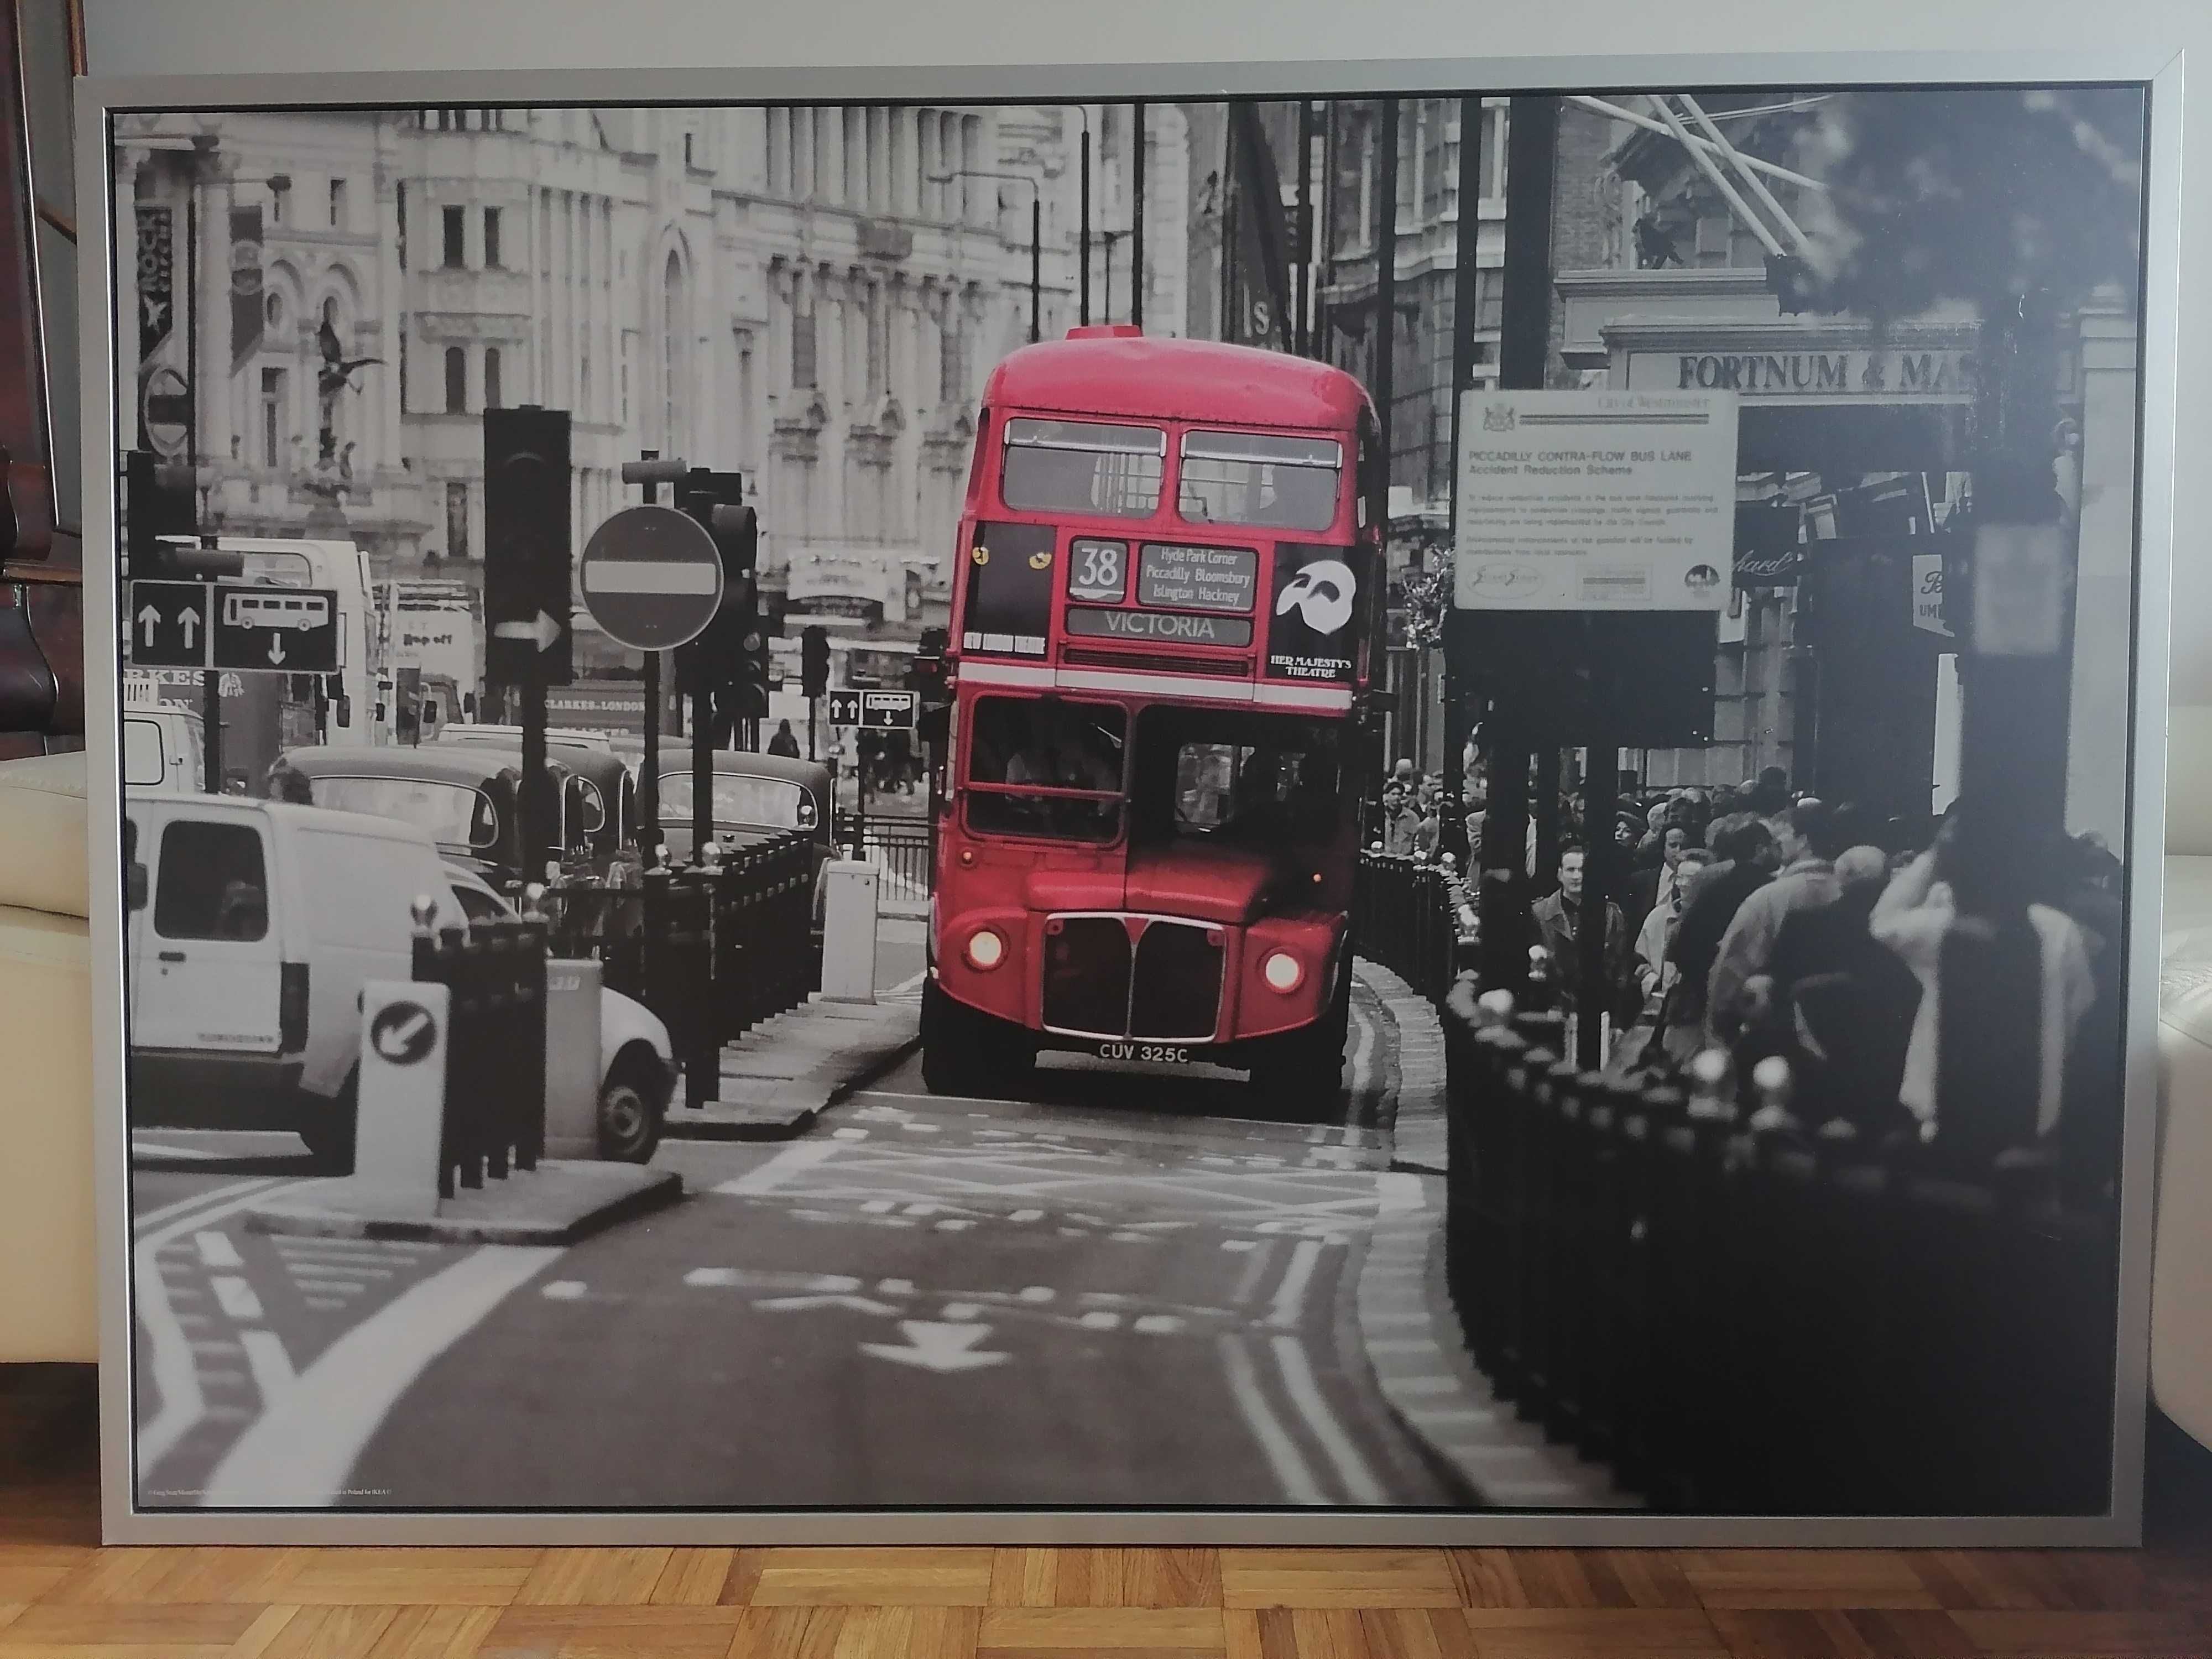 Obraz 140x100 Bus London ogromny ikea